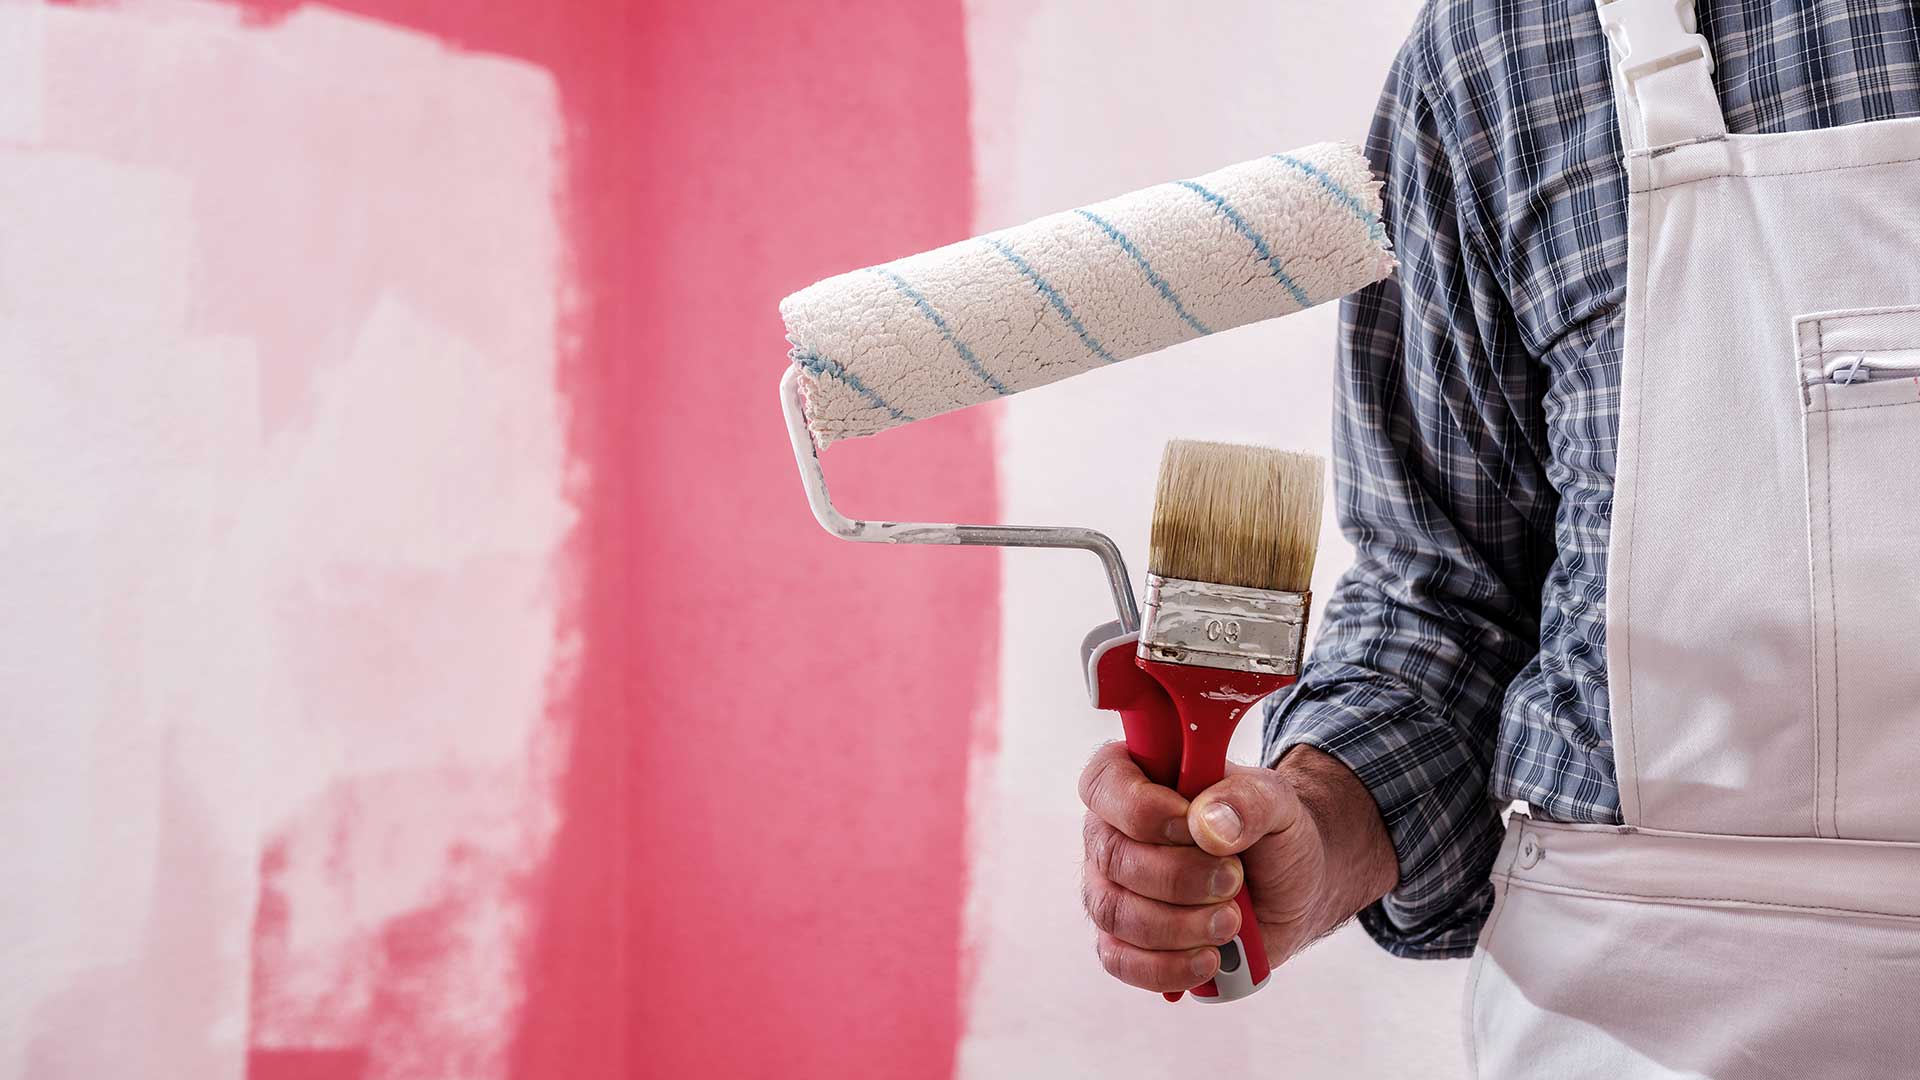 malarz z pędzlem i wałkiem w ręce stoi na tle malowanej ściany -  w 2021